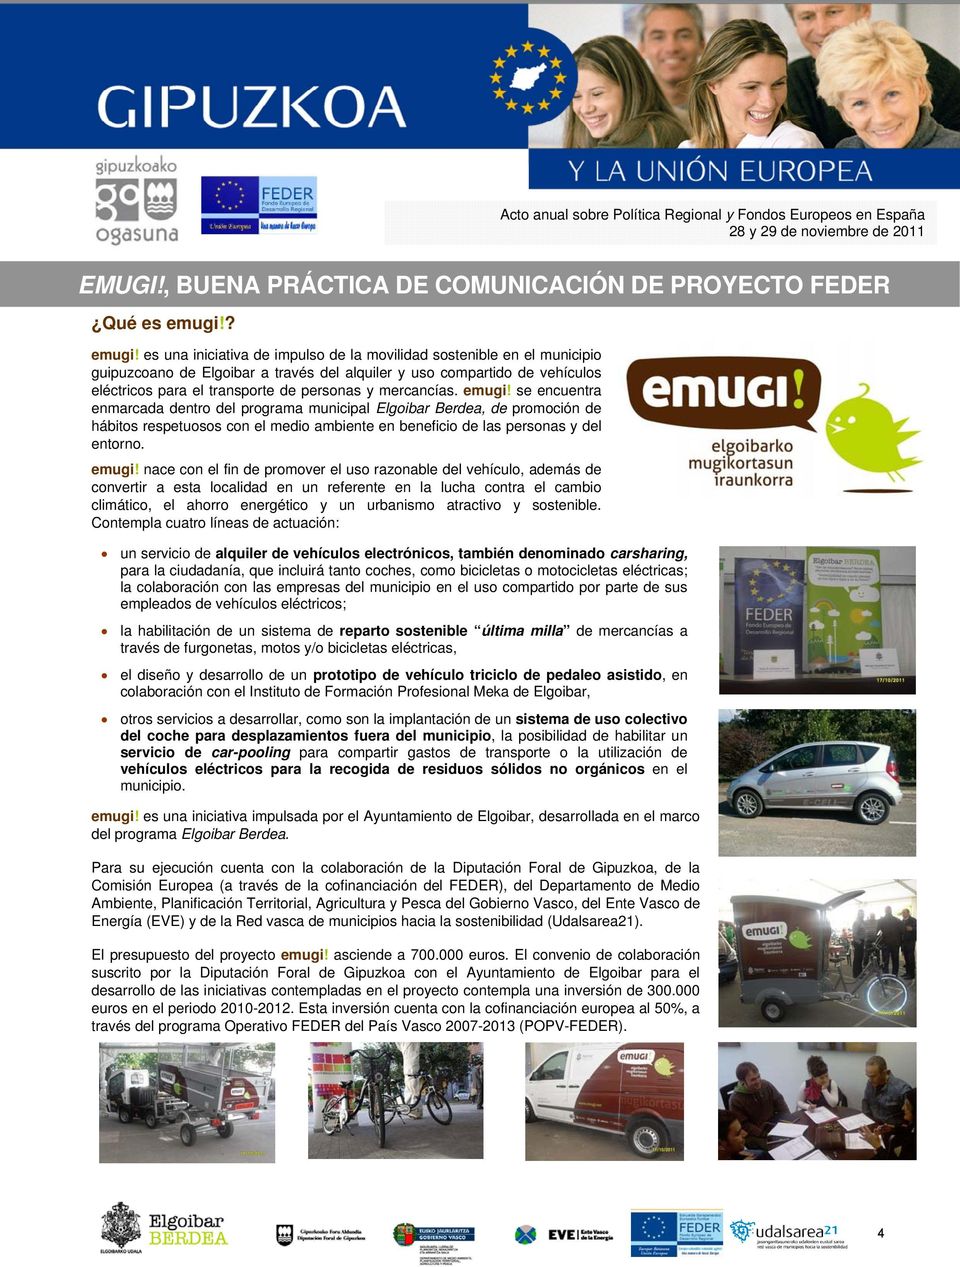 es una iniciativa de impulso de la movilidad sostenible en el municipio guipuzcoano de Elgoibar a través del alquiler y uso compartido de vehículos eléctricos para el transporte de personas y